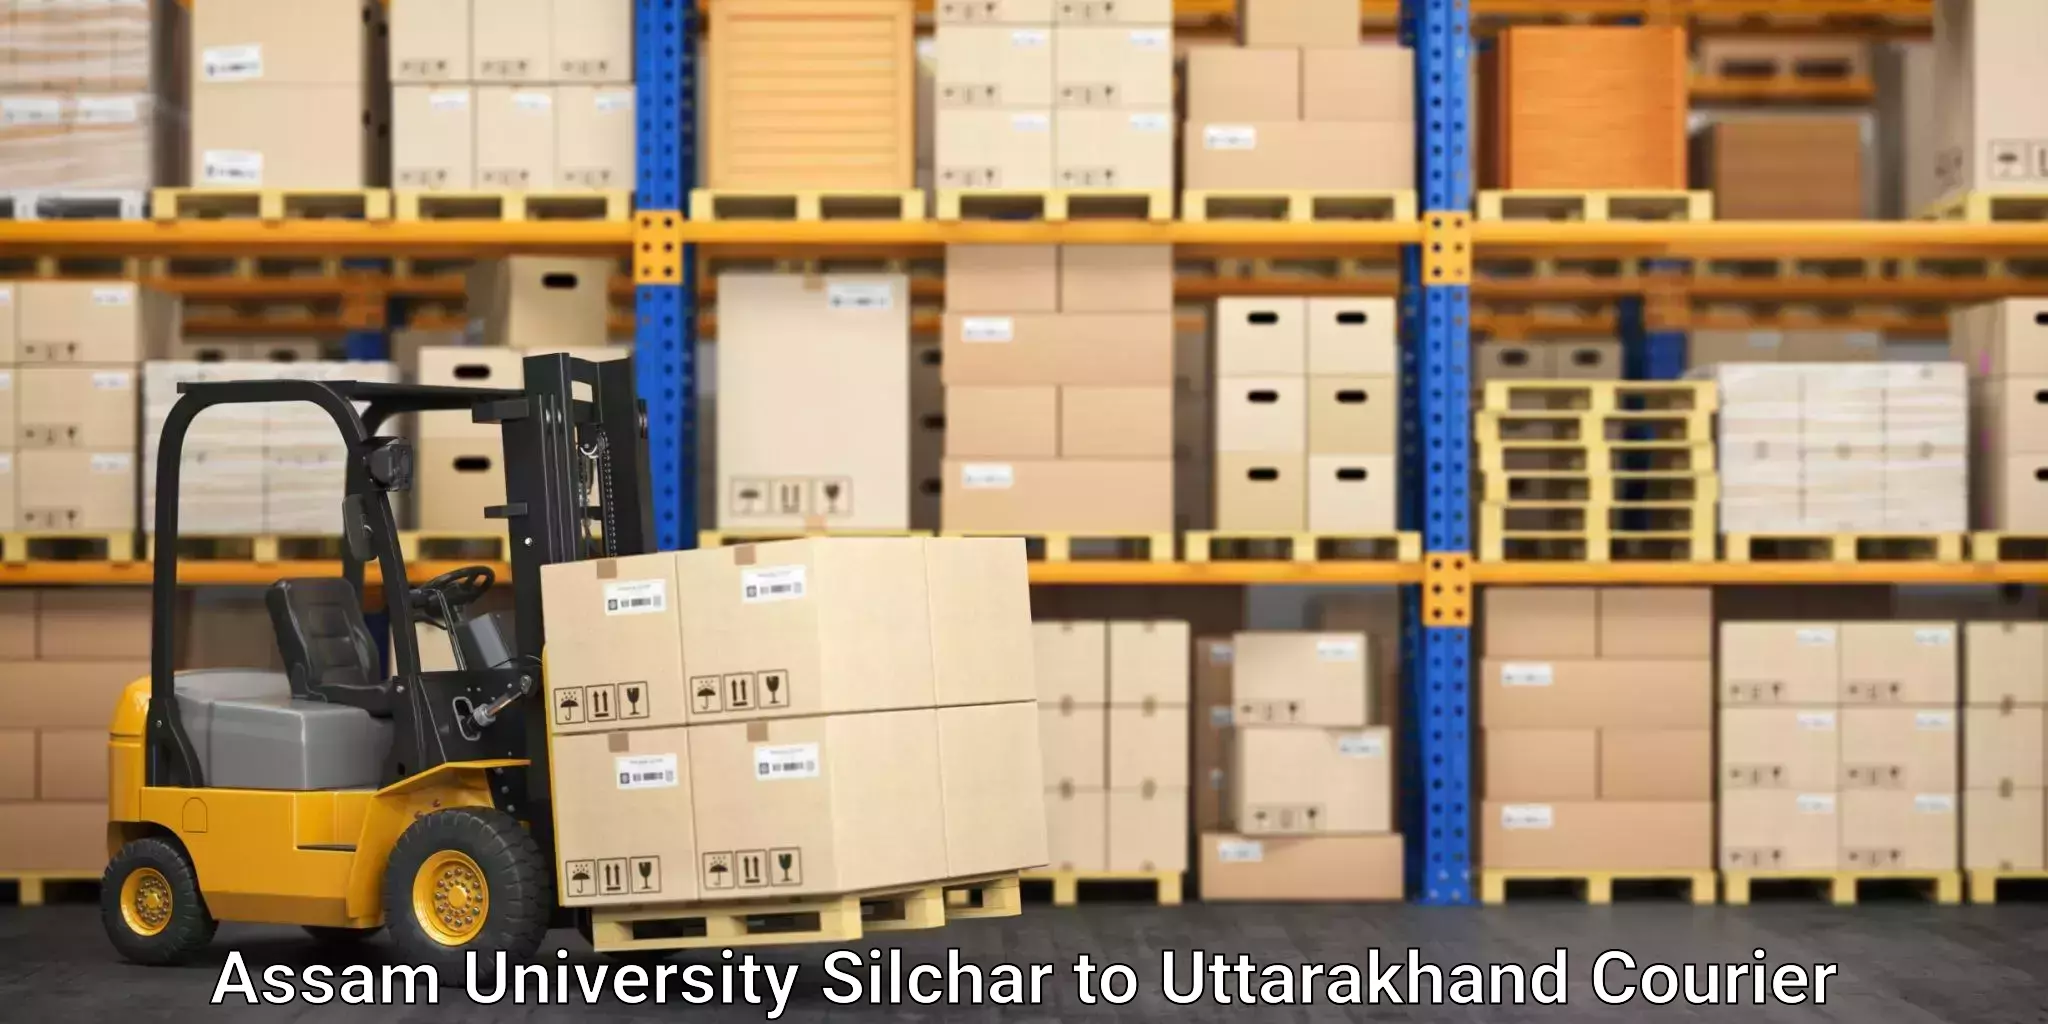 Speedy delivery service Assam University Silchar to Rudraprayag